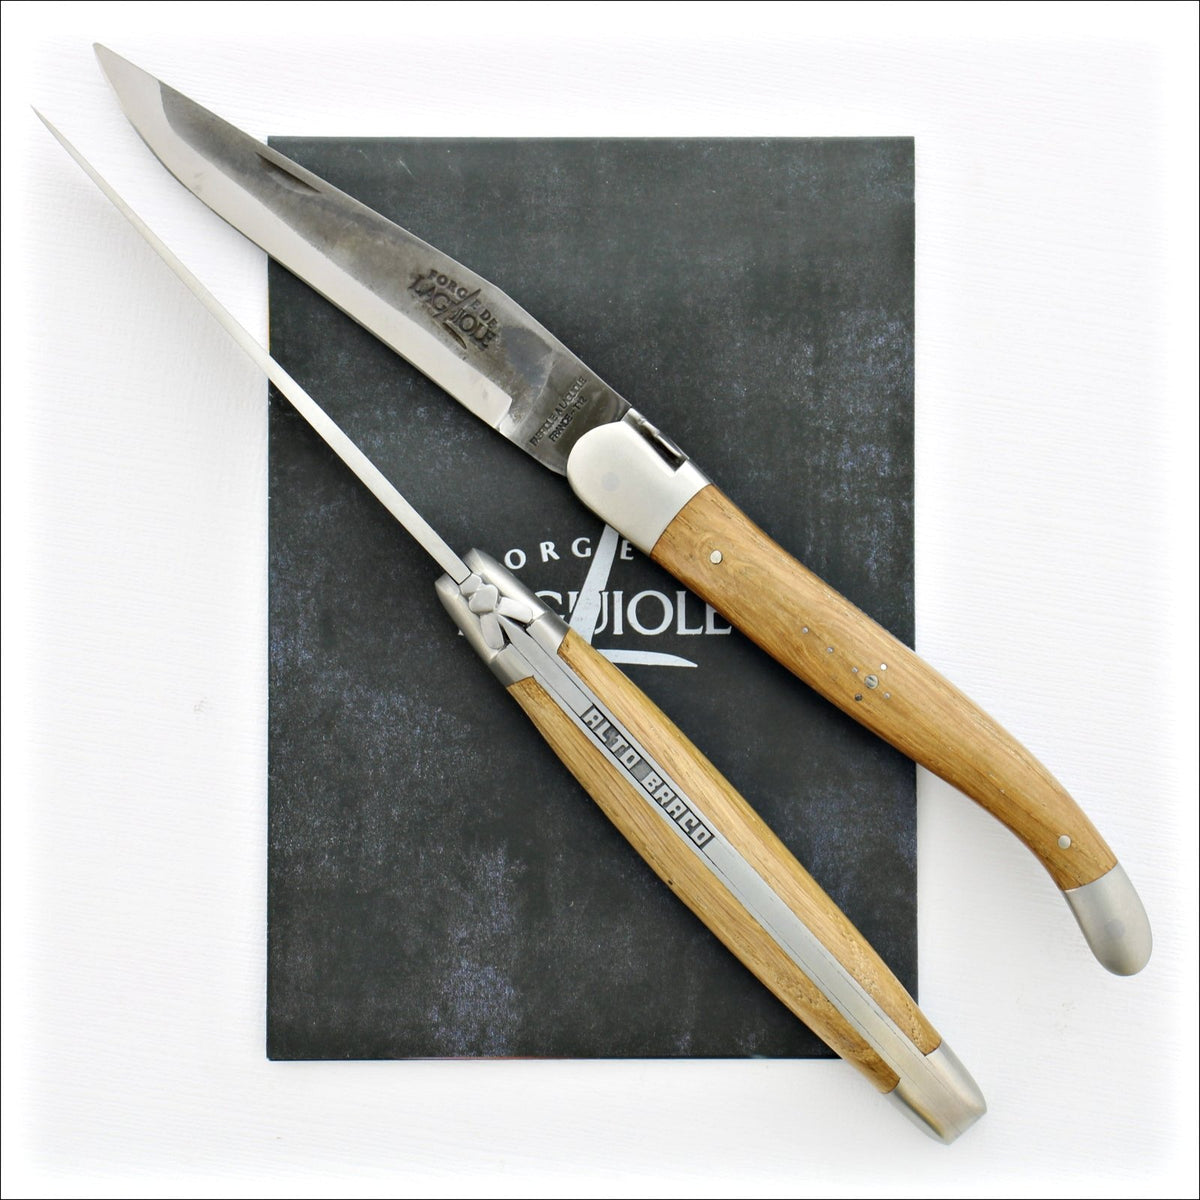 Alto Braco 12 cm Brut de Forge Pocket Knife - Limited Edition